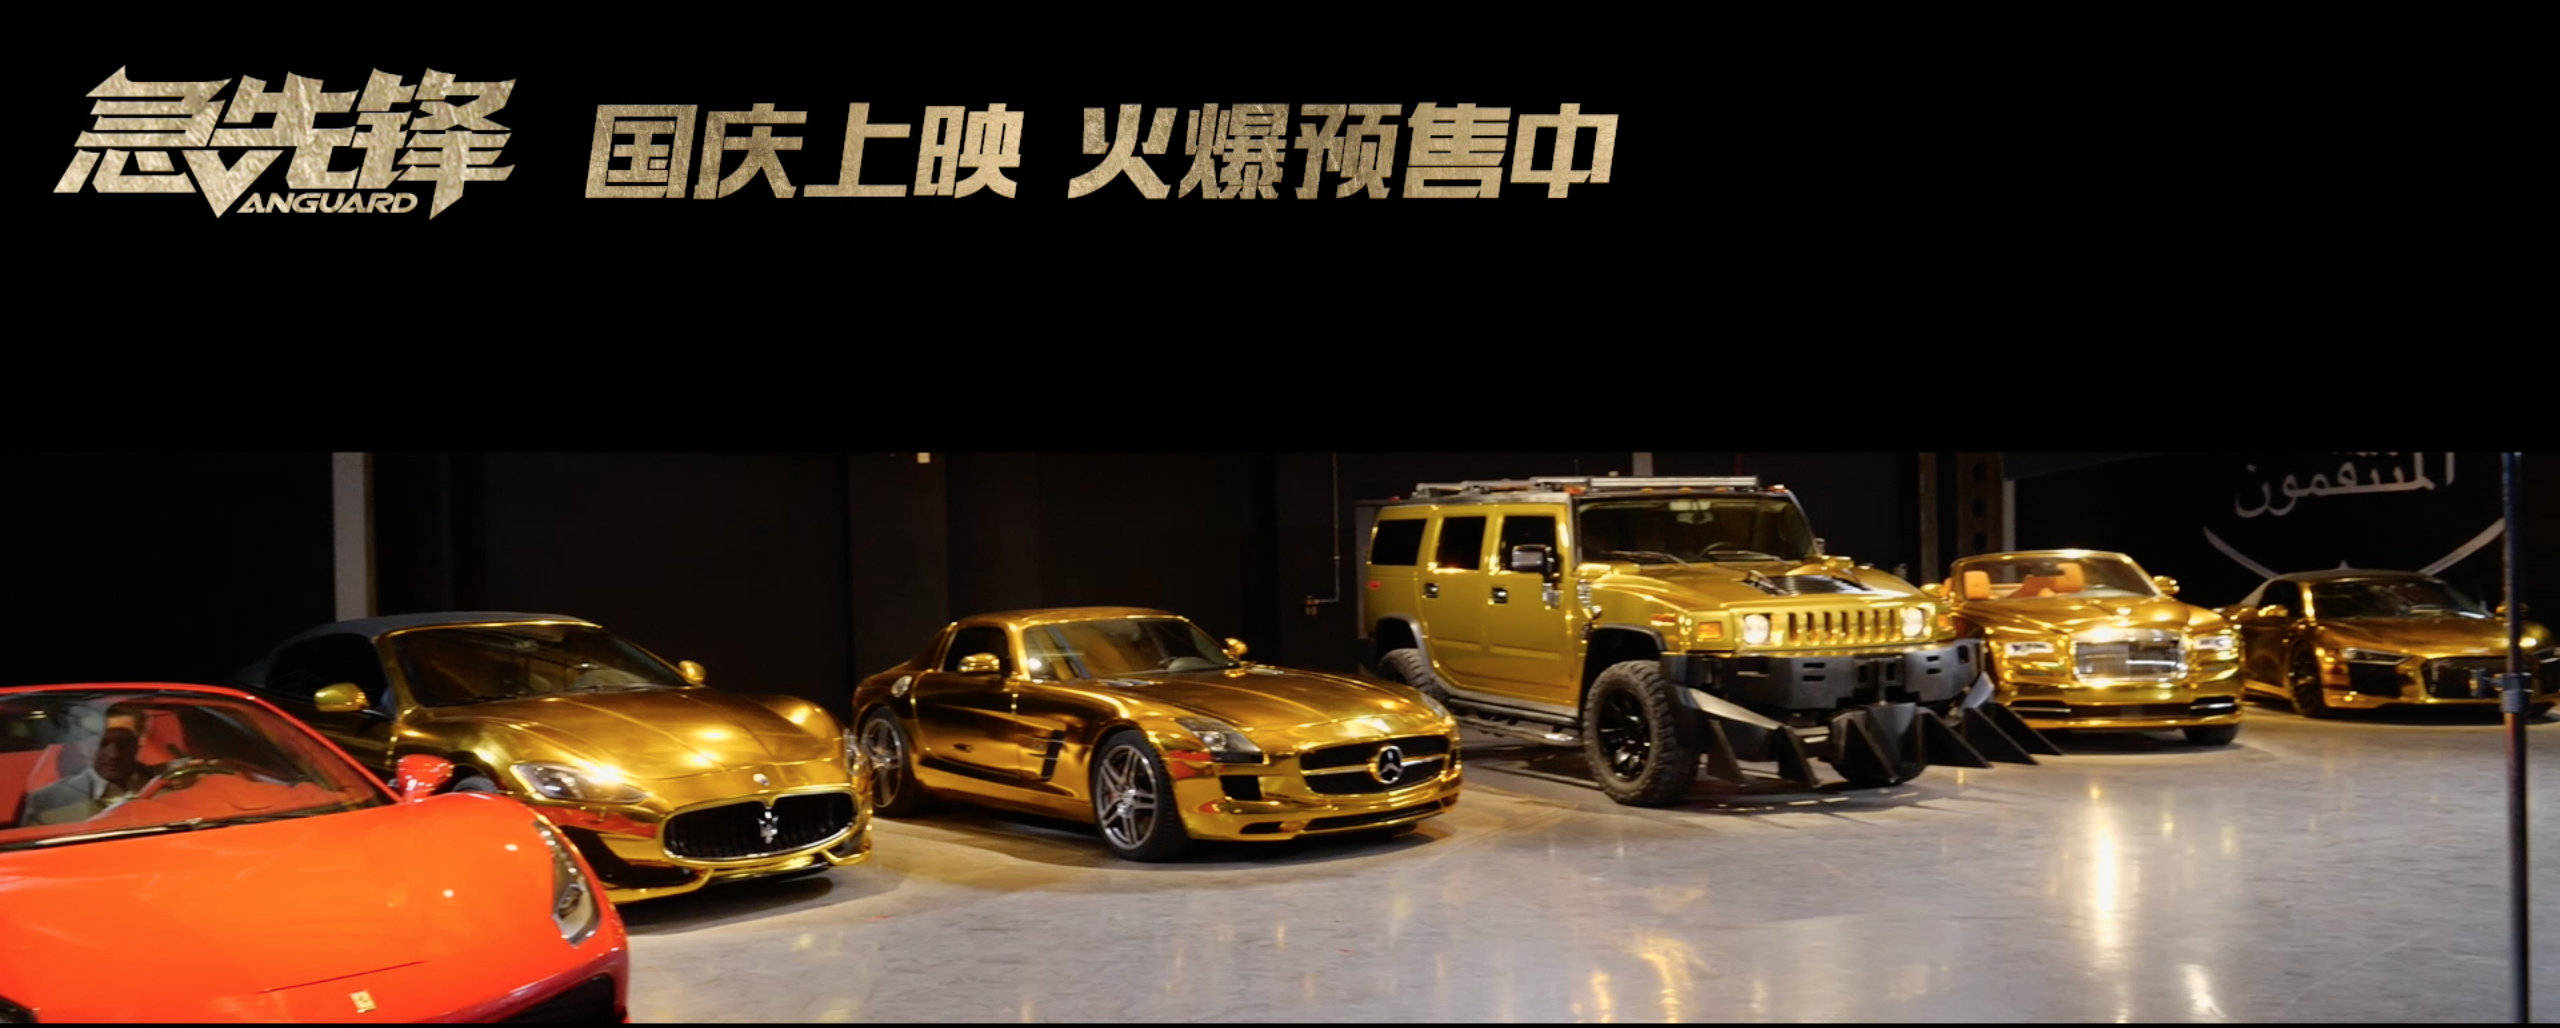 电影《急先锋》发布"迪拜黄金车"特辑 8亿美金迪拜